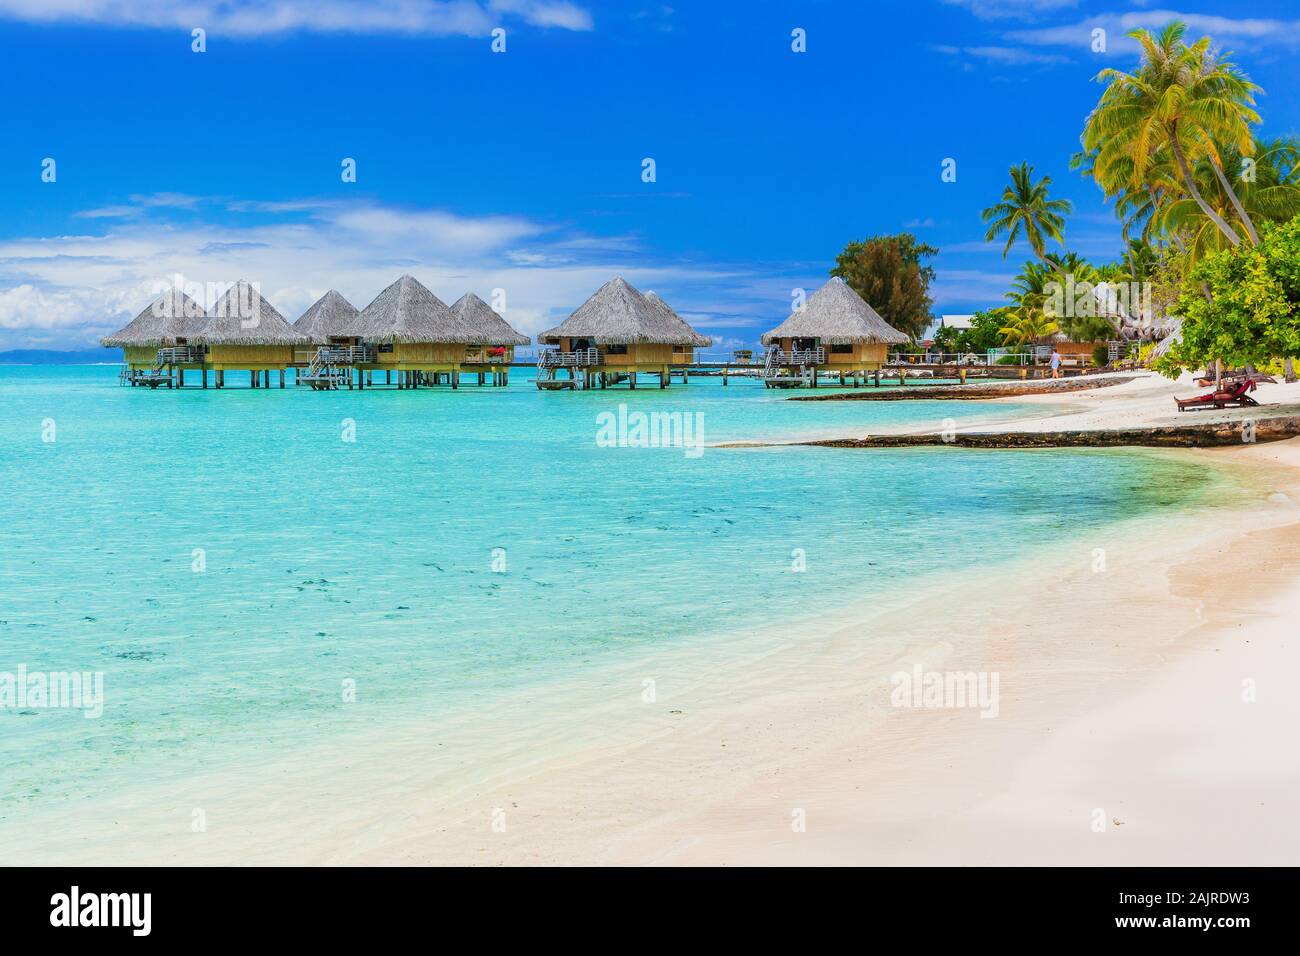 Bungalow sull'acqua del resort tropicale, isola di Bora Bora, vicino a Tahiti, Polinesia francese. Foto Stock